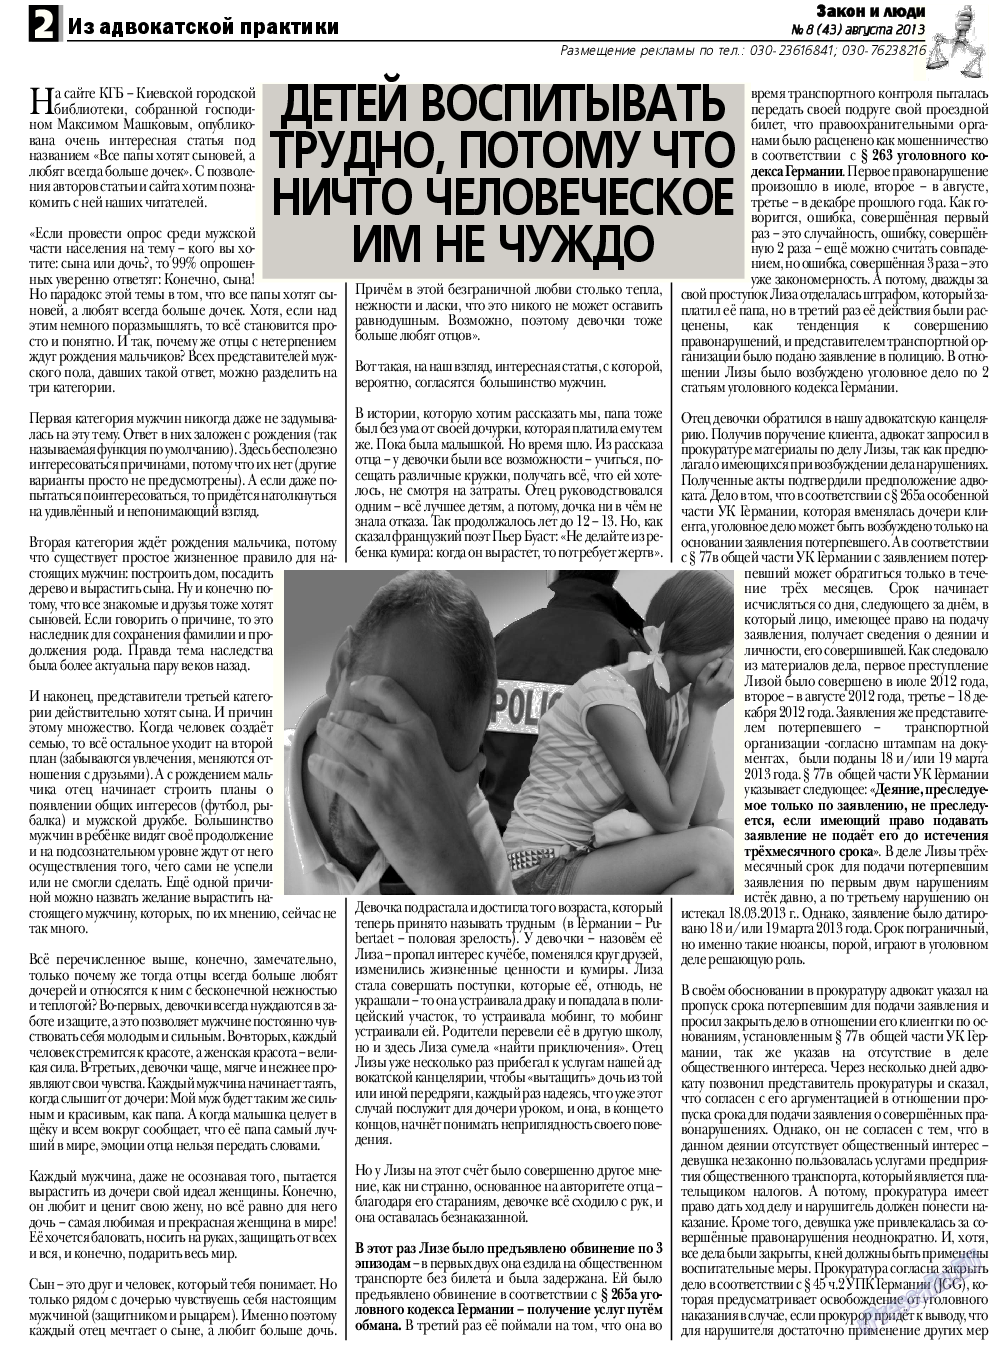 Закон и люди, газета. 2013 №8 стр.2